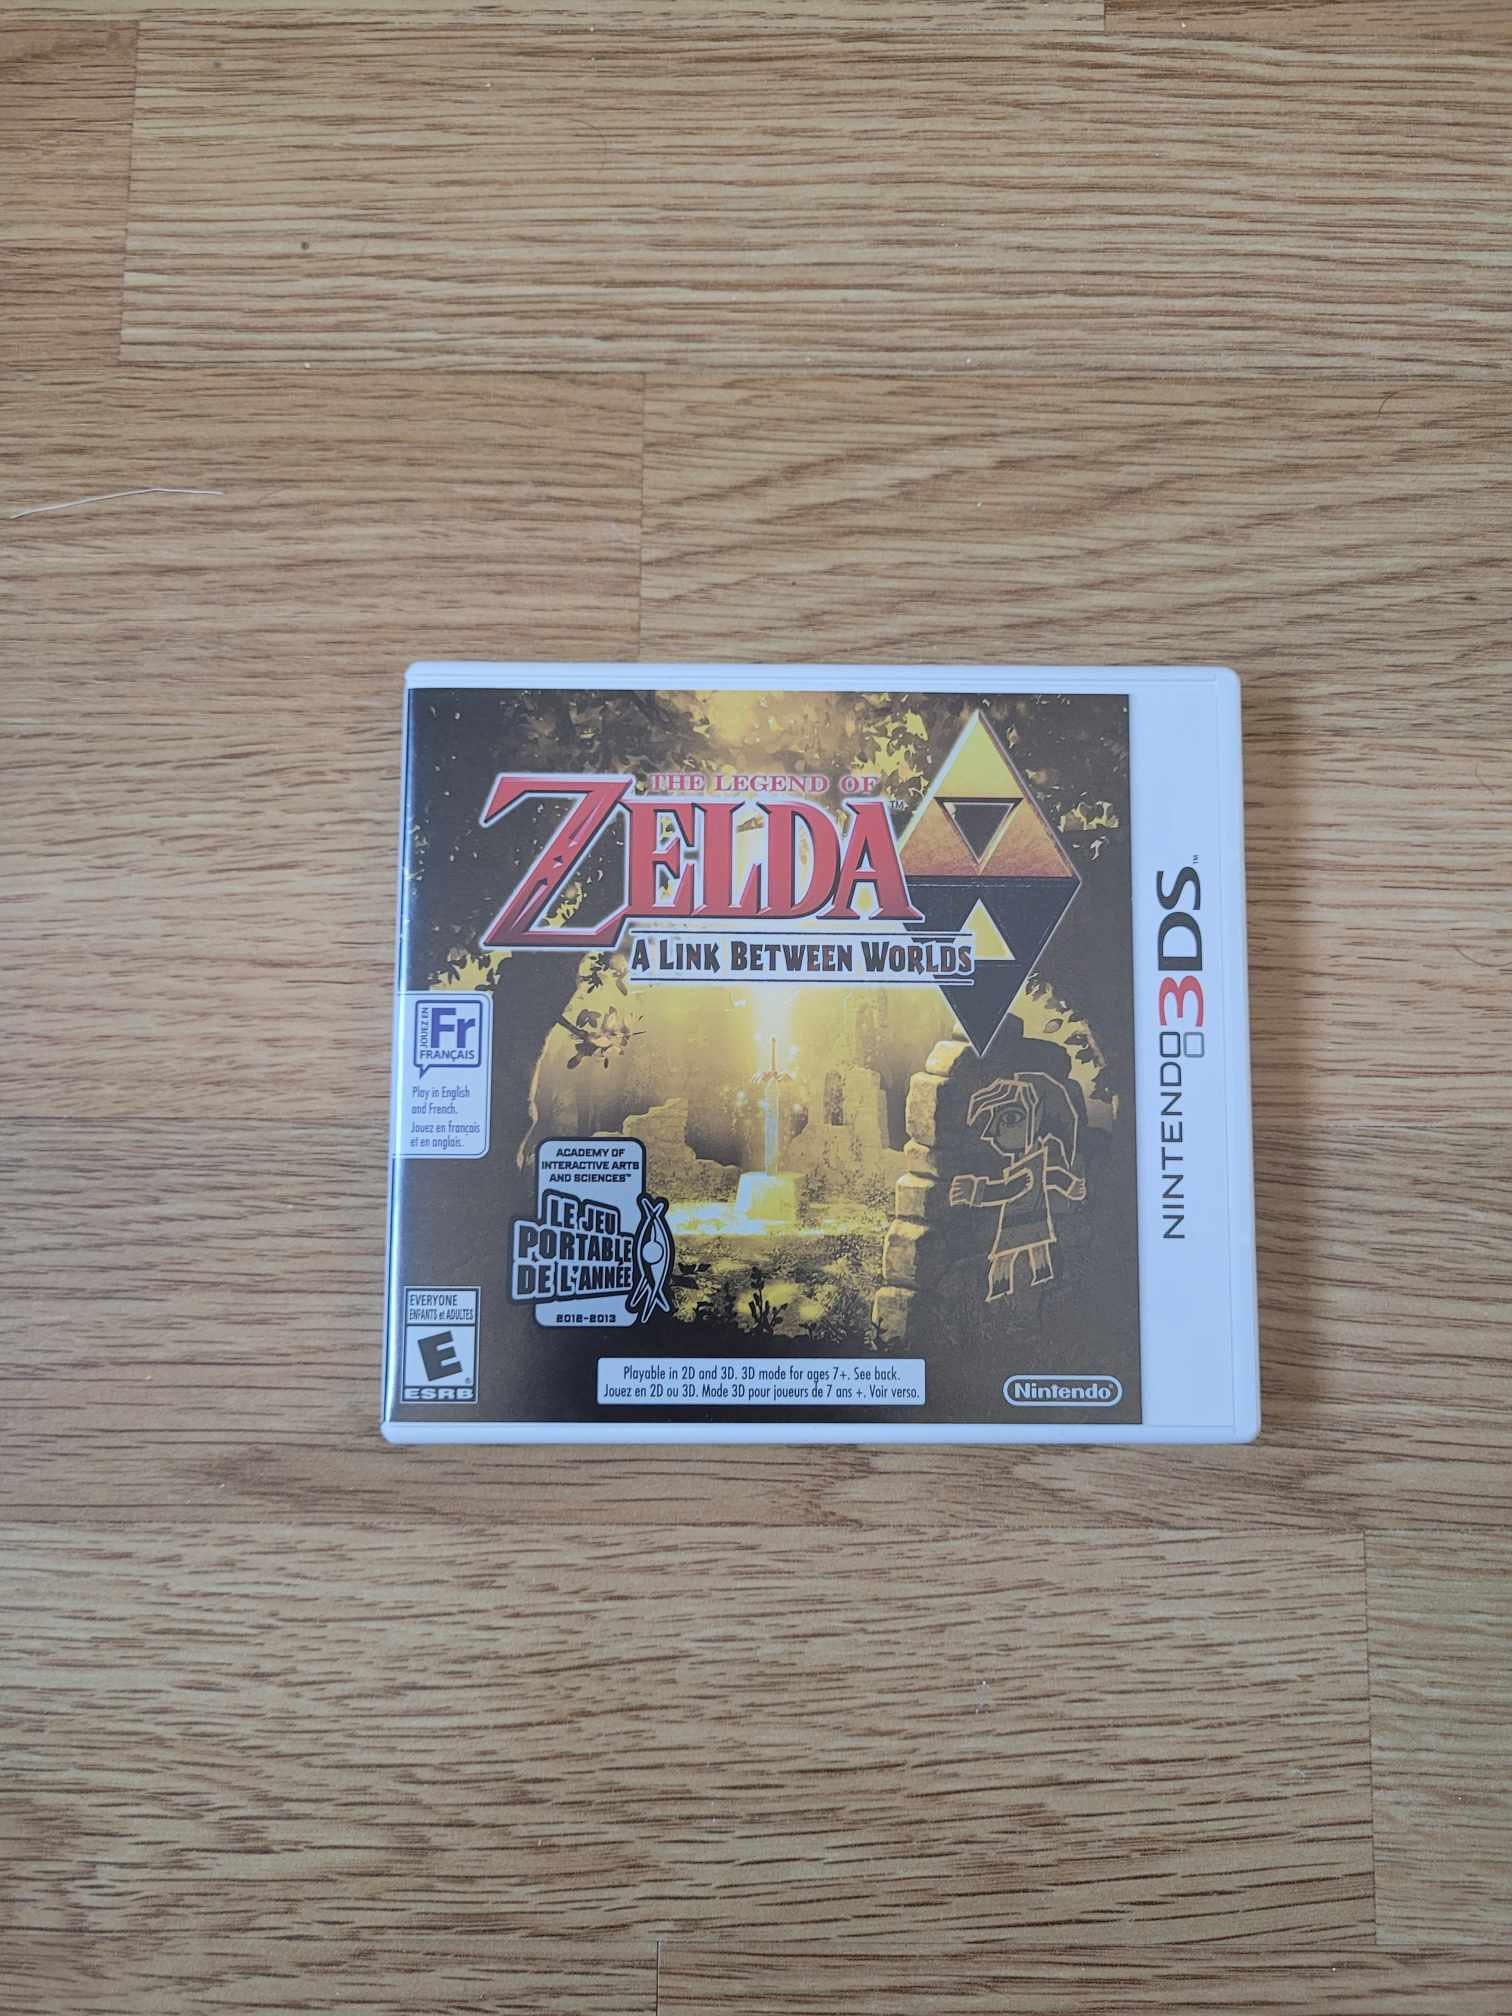 Zelda: A Link Between Worlds guide – The Master Sword